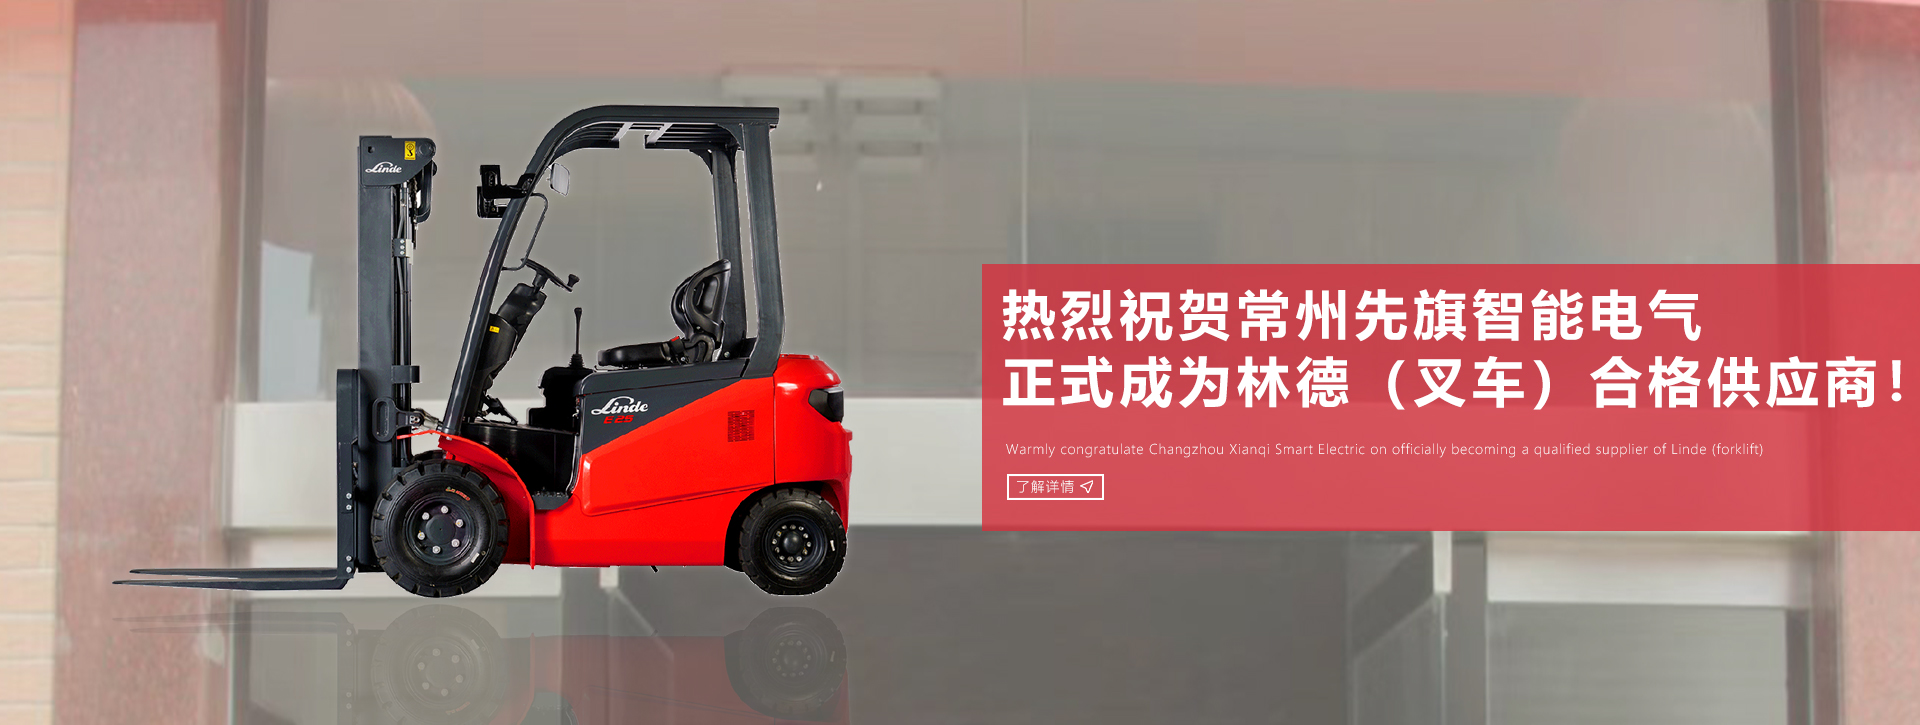 热烈祝贺9455澳门新葡萄娱乐场网站正式成为 林德（中国）叉车合格供应商